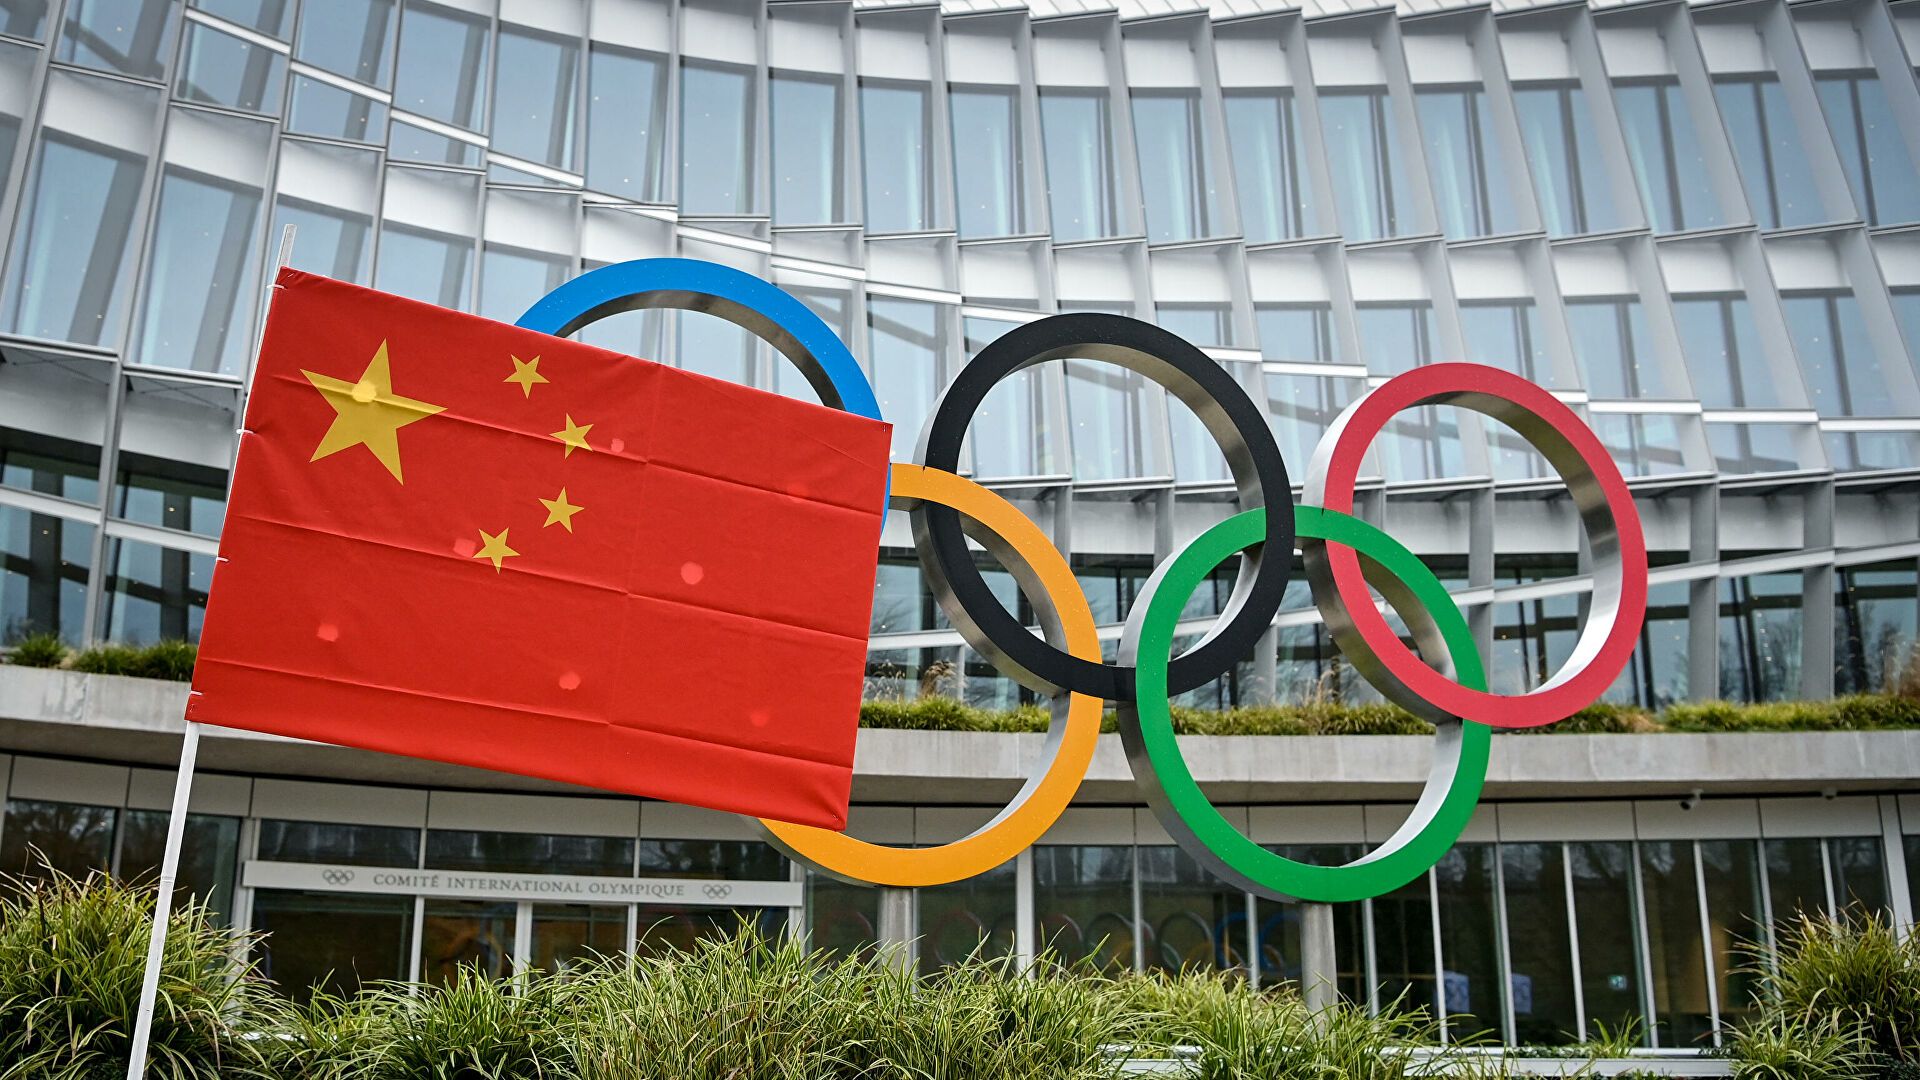 Союз конькобежцев России представил состав команды для участия в Олимпиаде-2022 в Пекине